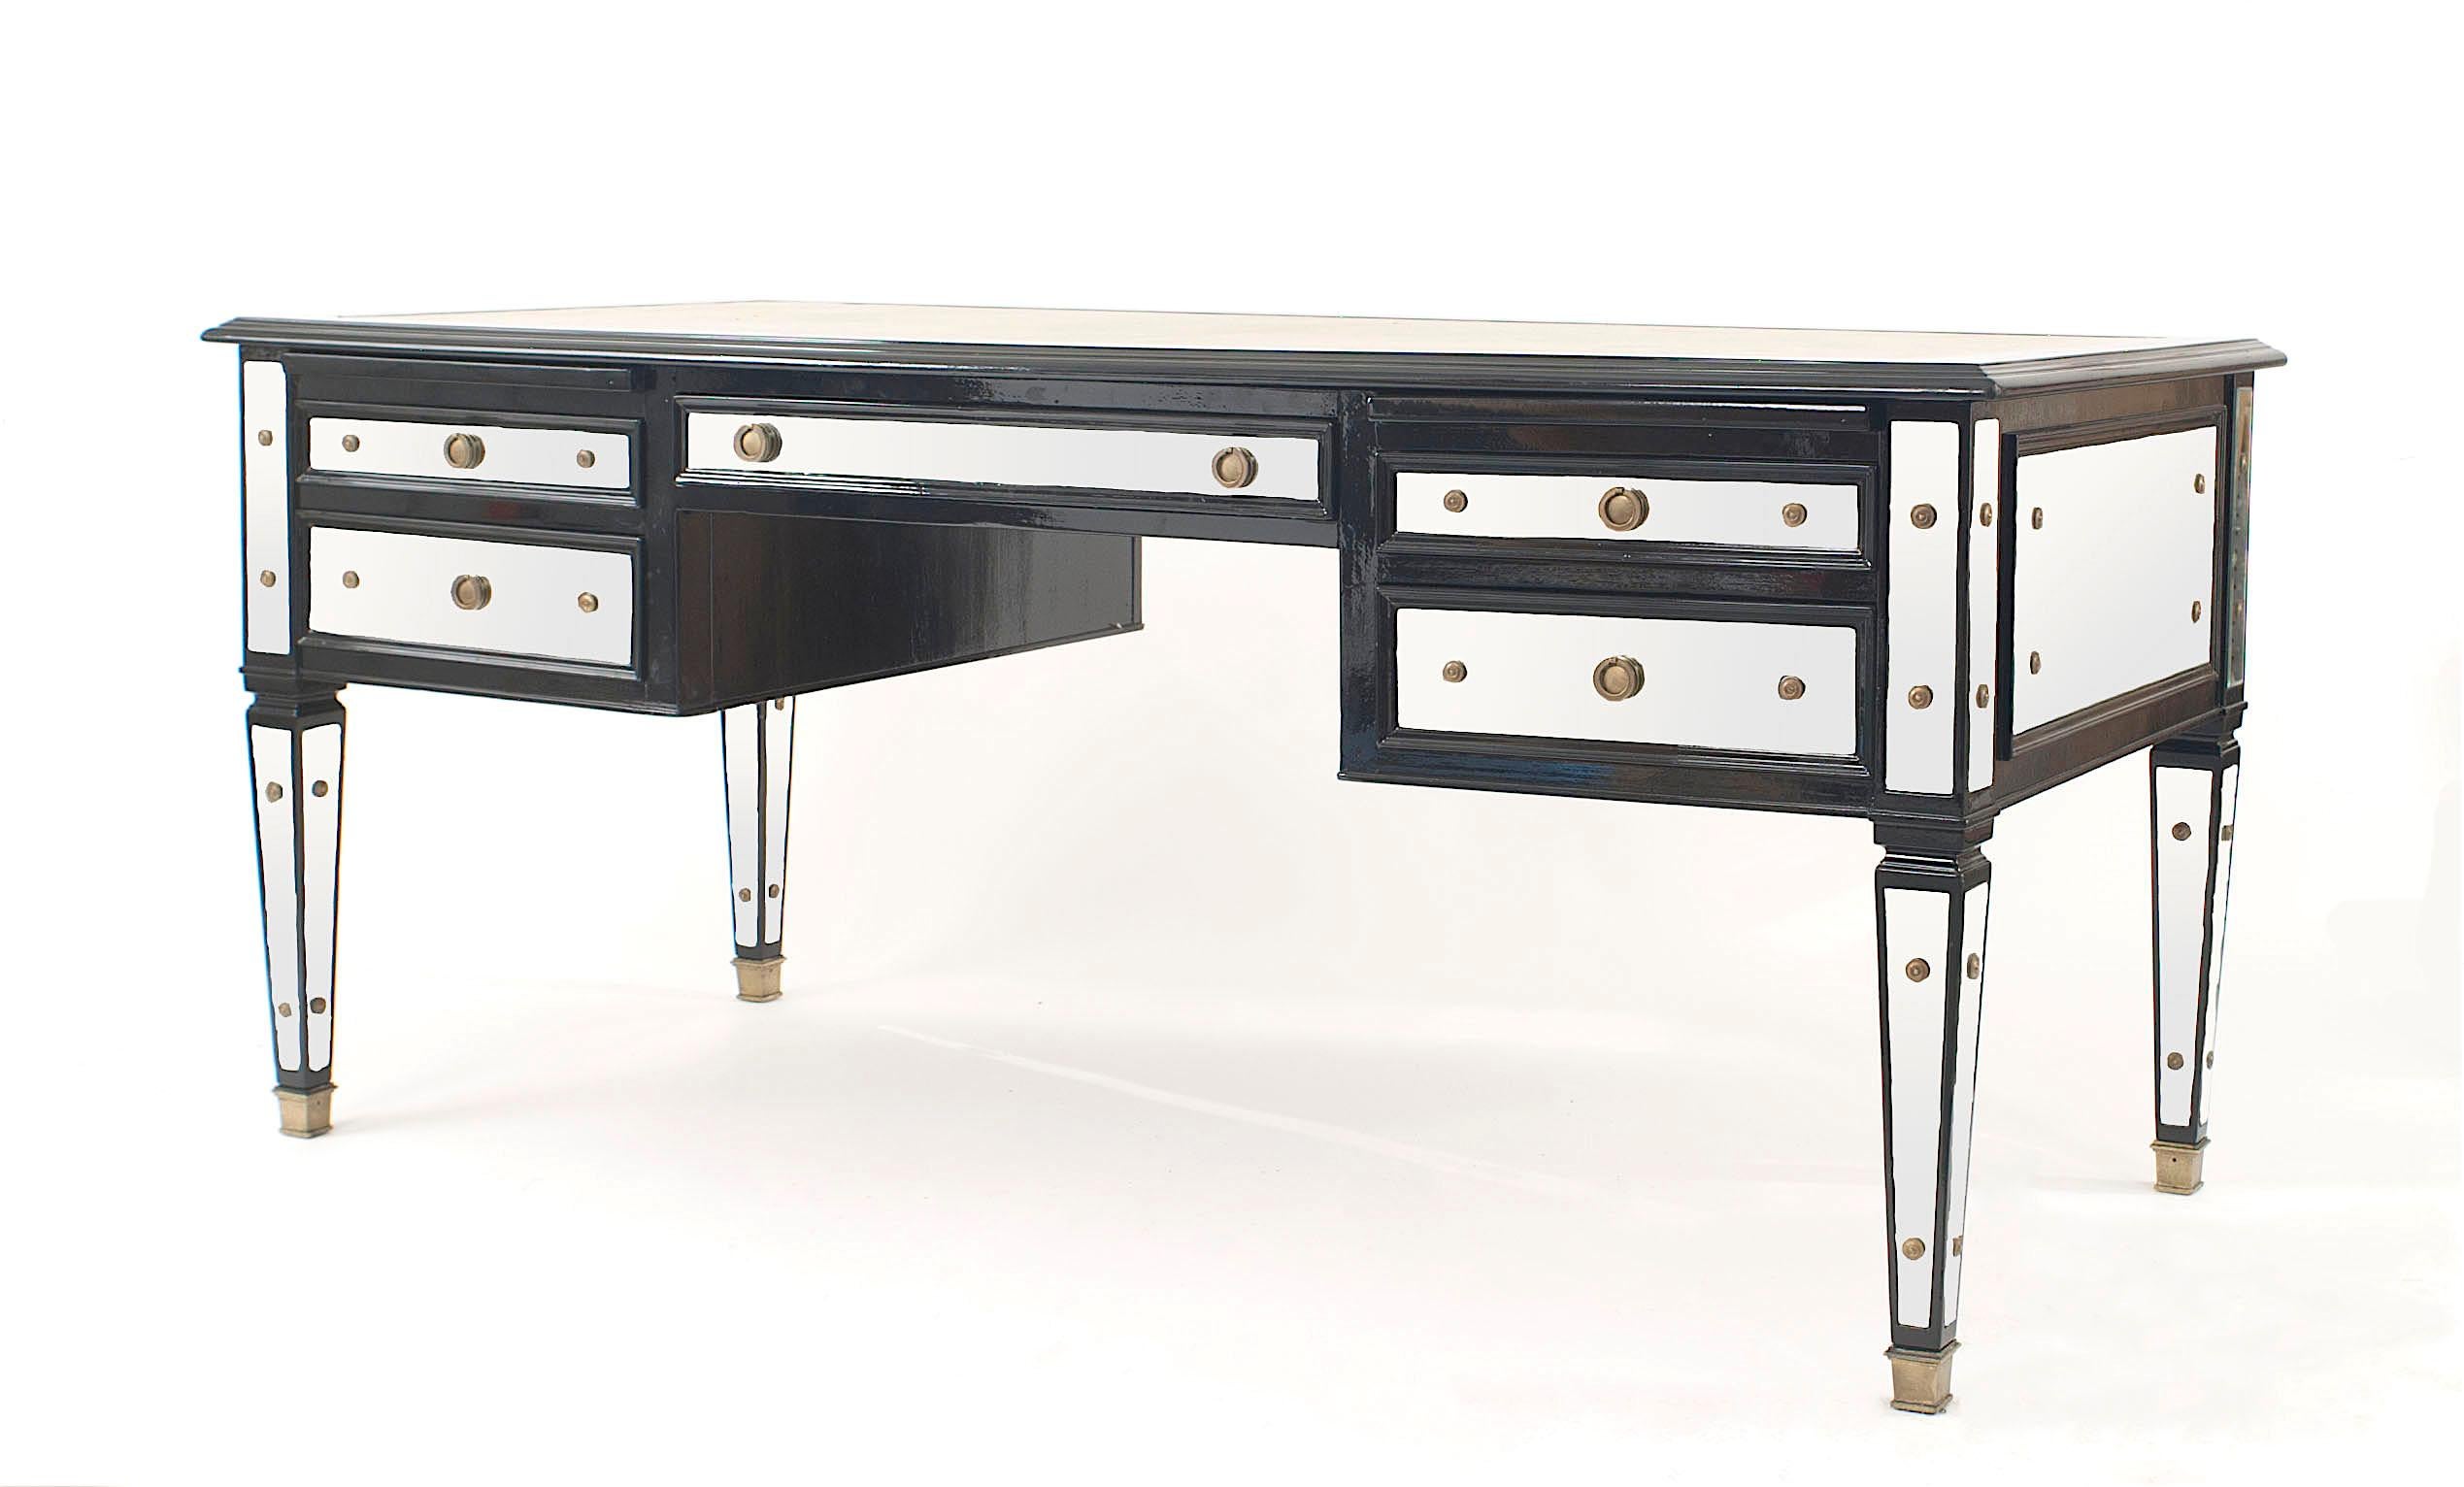 Französischer ebonisierter und verspiegelter Schreibtisch aus der Mitte des Jahrhunderts (1940er Jahre) mit fünf Schubladen und einer cremefarbenen Lederschreibfläche (Maison Jansen).

Maison Jansen war ein in Paris ansässiger Inneneinrichter, der